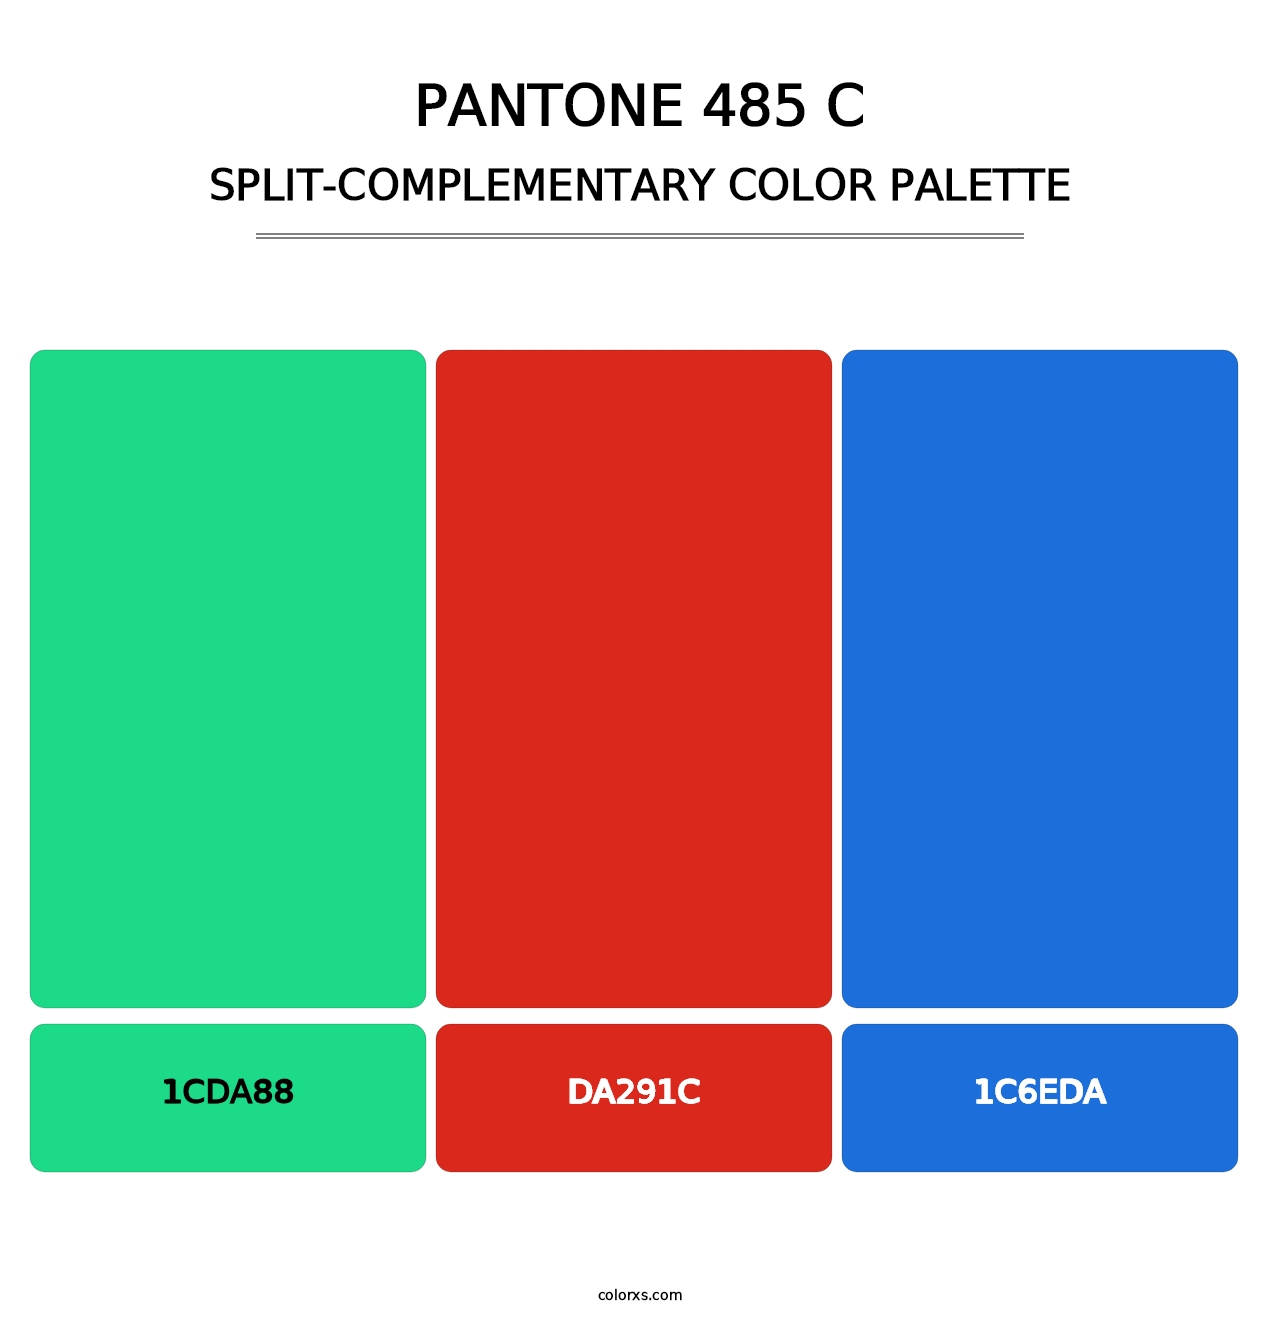 PANTONE 485 C - Split-Complementary Color Palette